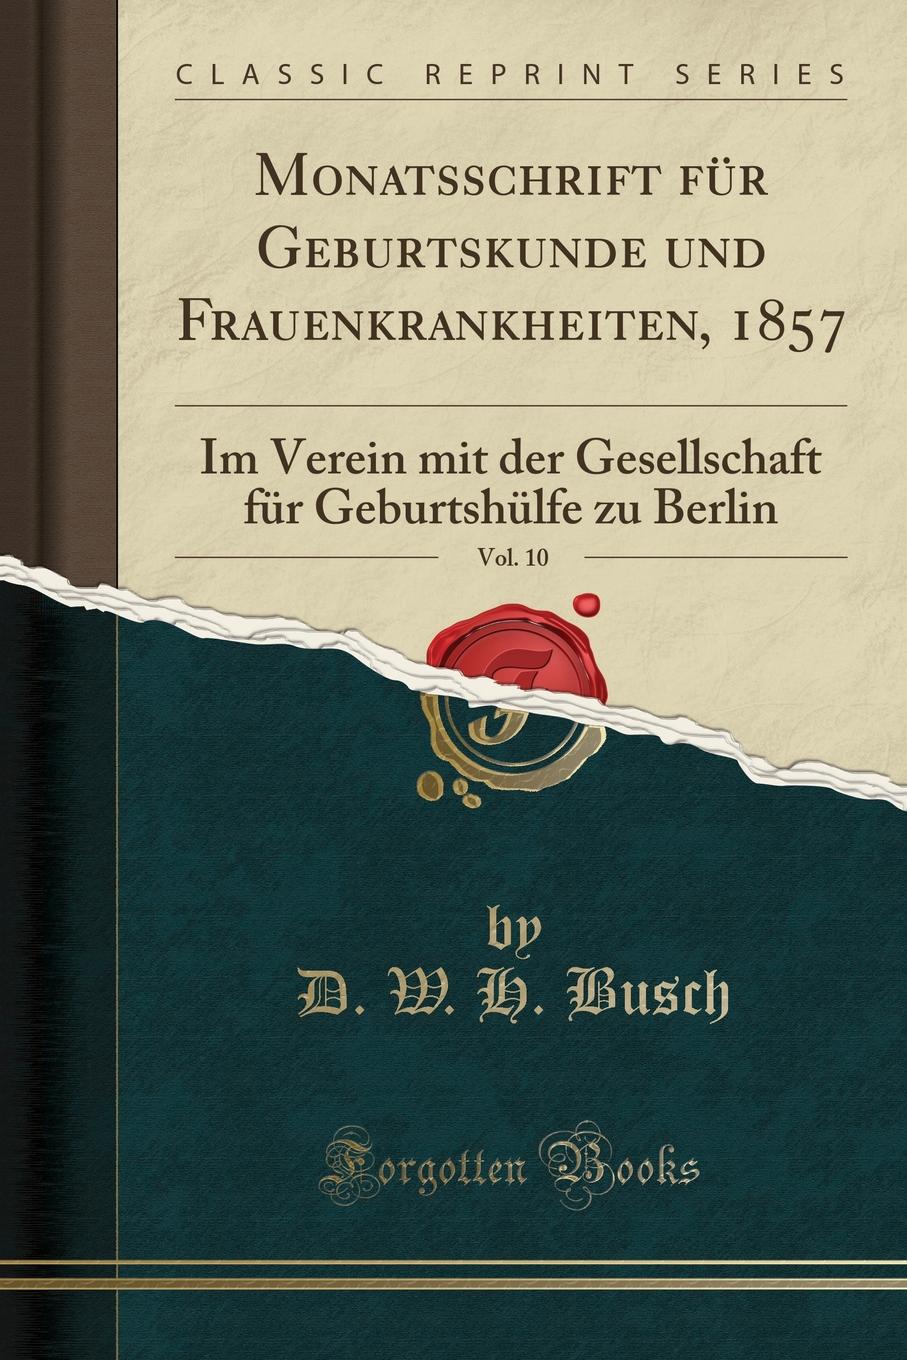 Monatsschrift fur Geburtskunde und Frauenkrankheiten, 1857, Vol. 10. Im Verein mit der Gesellschaft fur Geburtshulfe zu Berlin (Classic Reprint)